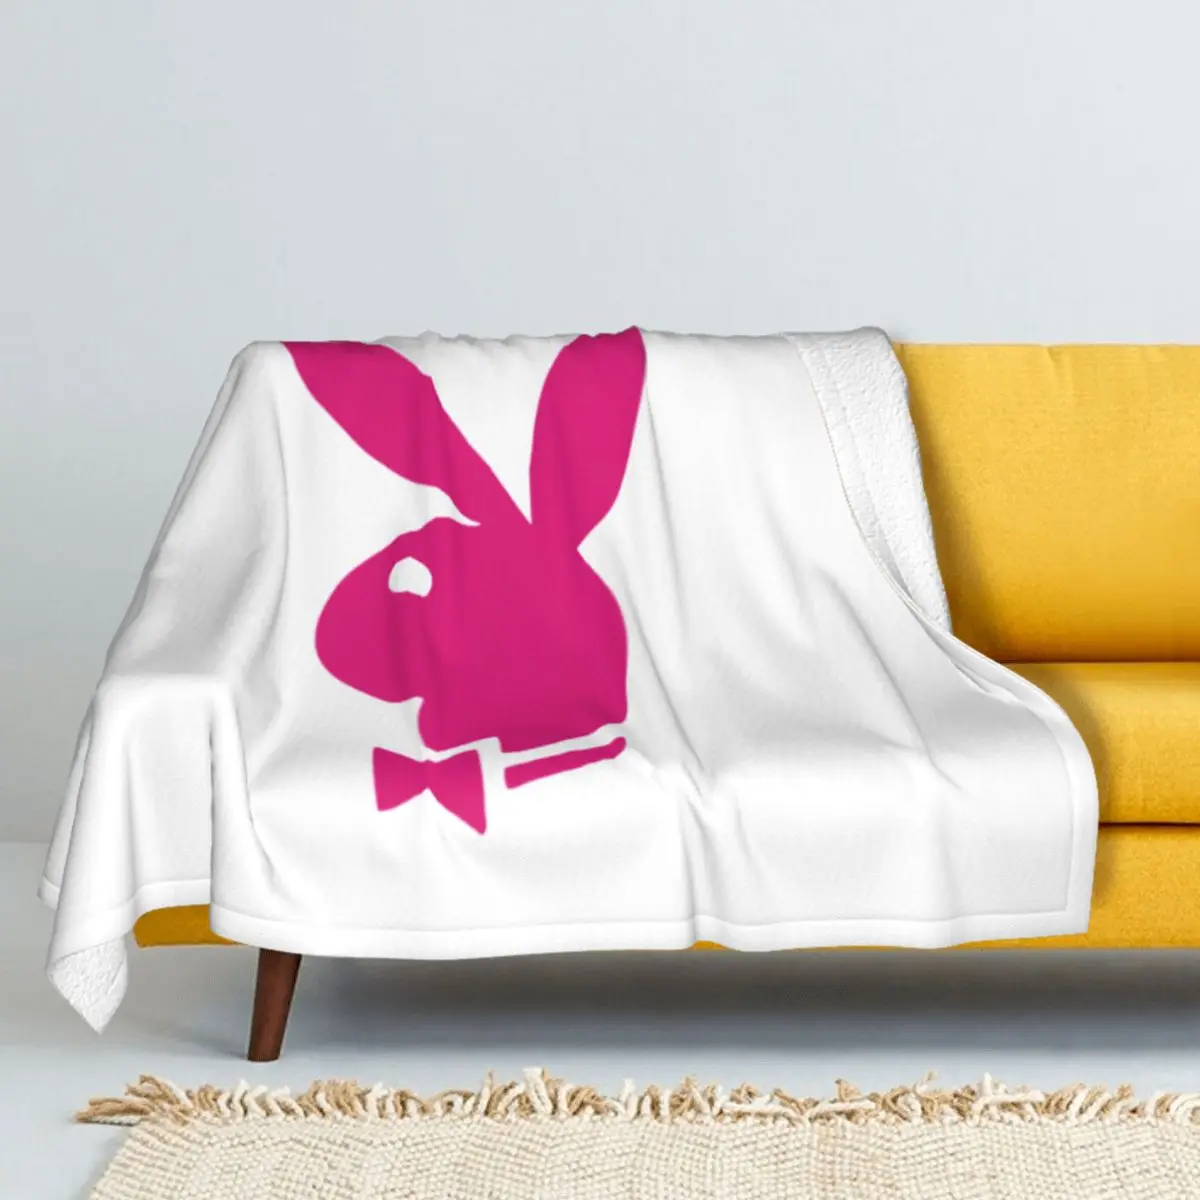 

Зимнее утолщенное Двухслойное шерстяное одеяло с рисунком кролика розового цвета, фланелевое одеяло, мягкая подкладка для кровати, для взр...